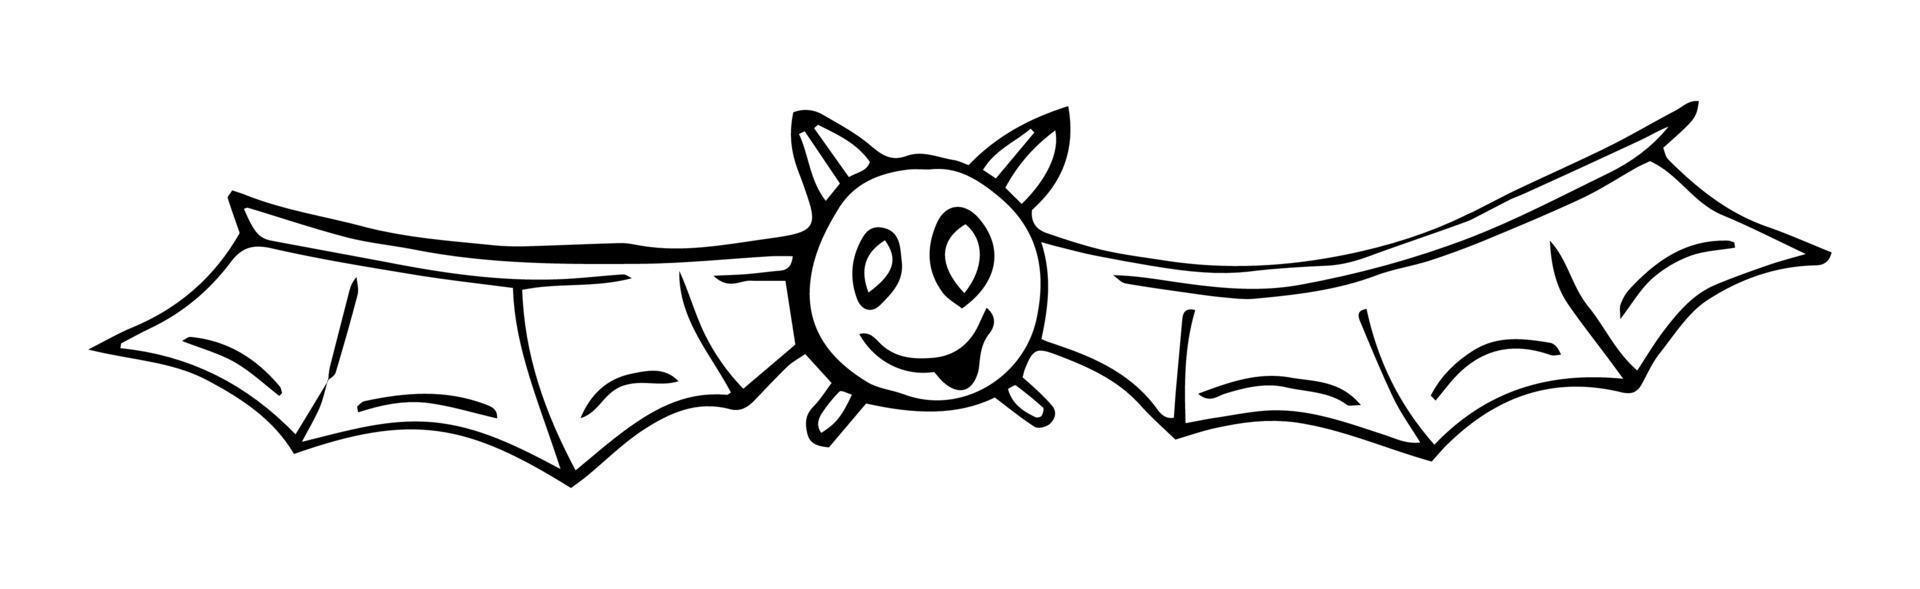 ilustração vetorial. bastão. fundo de halloween de morcegos voando. ilustração em vetor morcego dos desenhos animados de morcegos. noite europeia dos morcegos. estilo doodle. morcegos voadores.